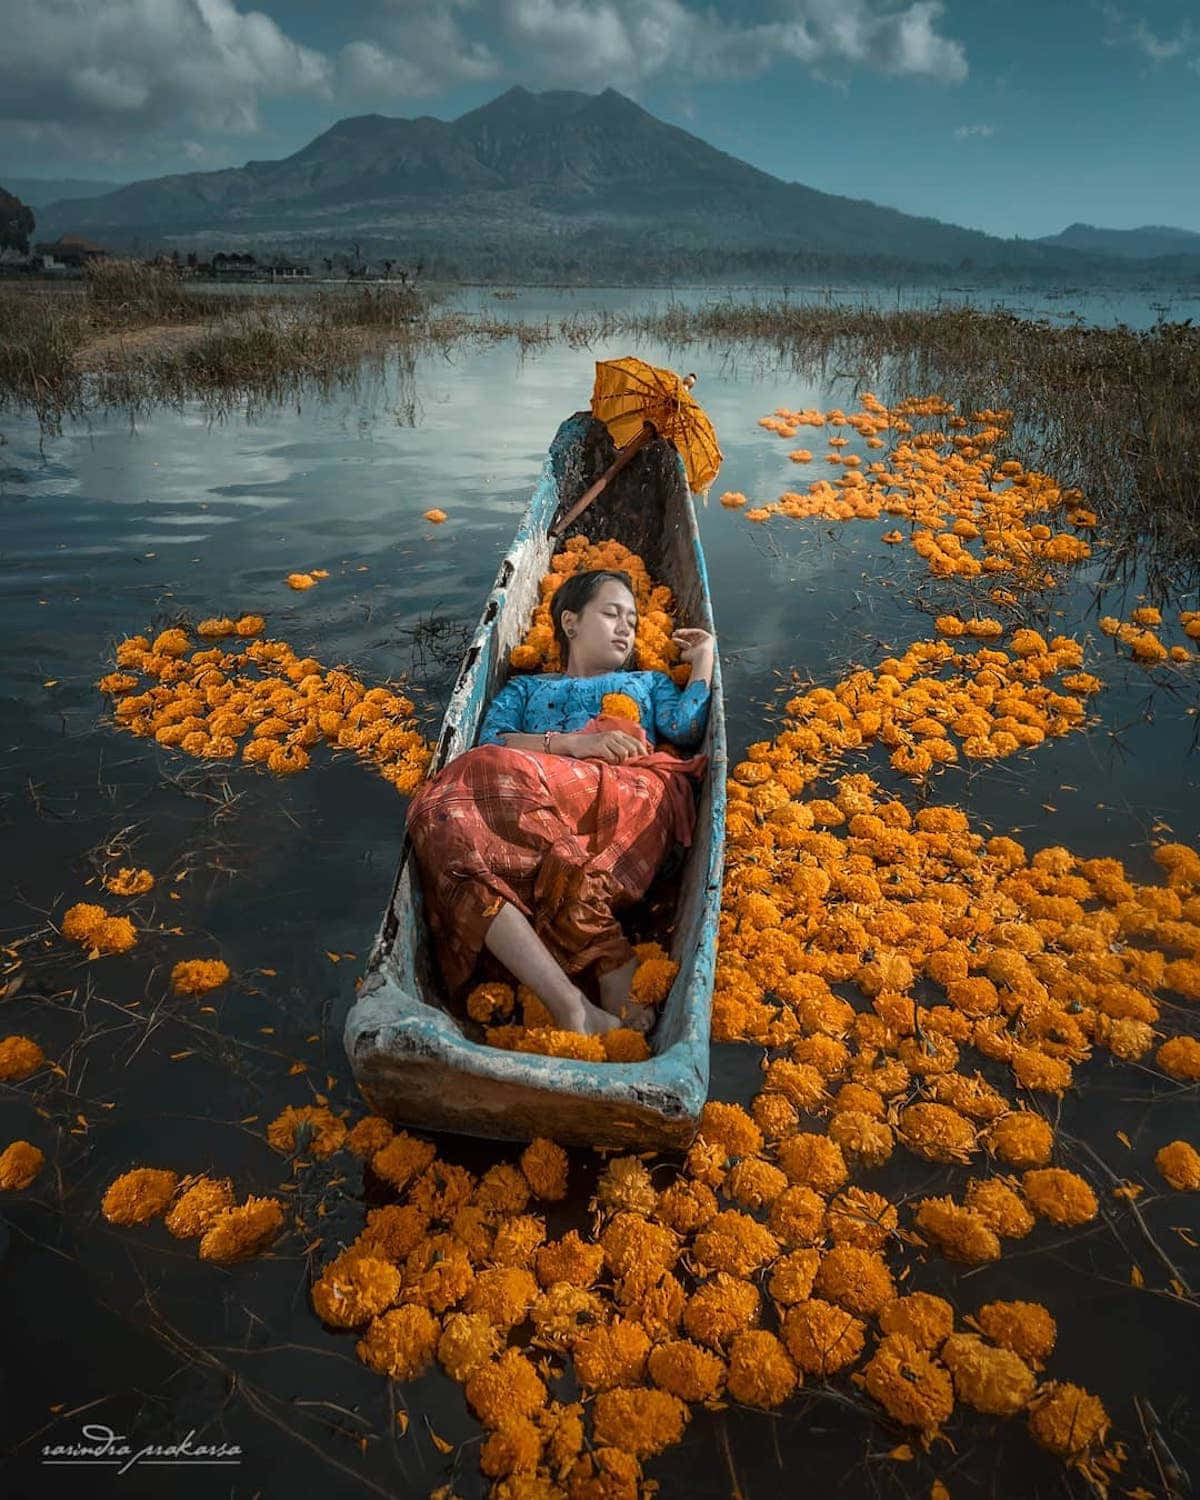 Einefrau Liegt In Einem Boot Mit Orangefarbenen Blumen Darauf.